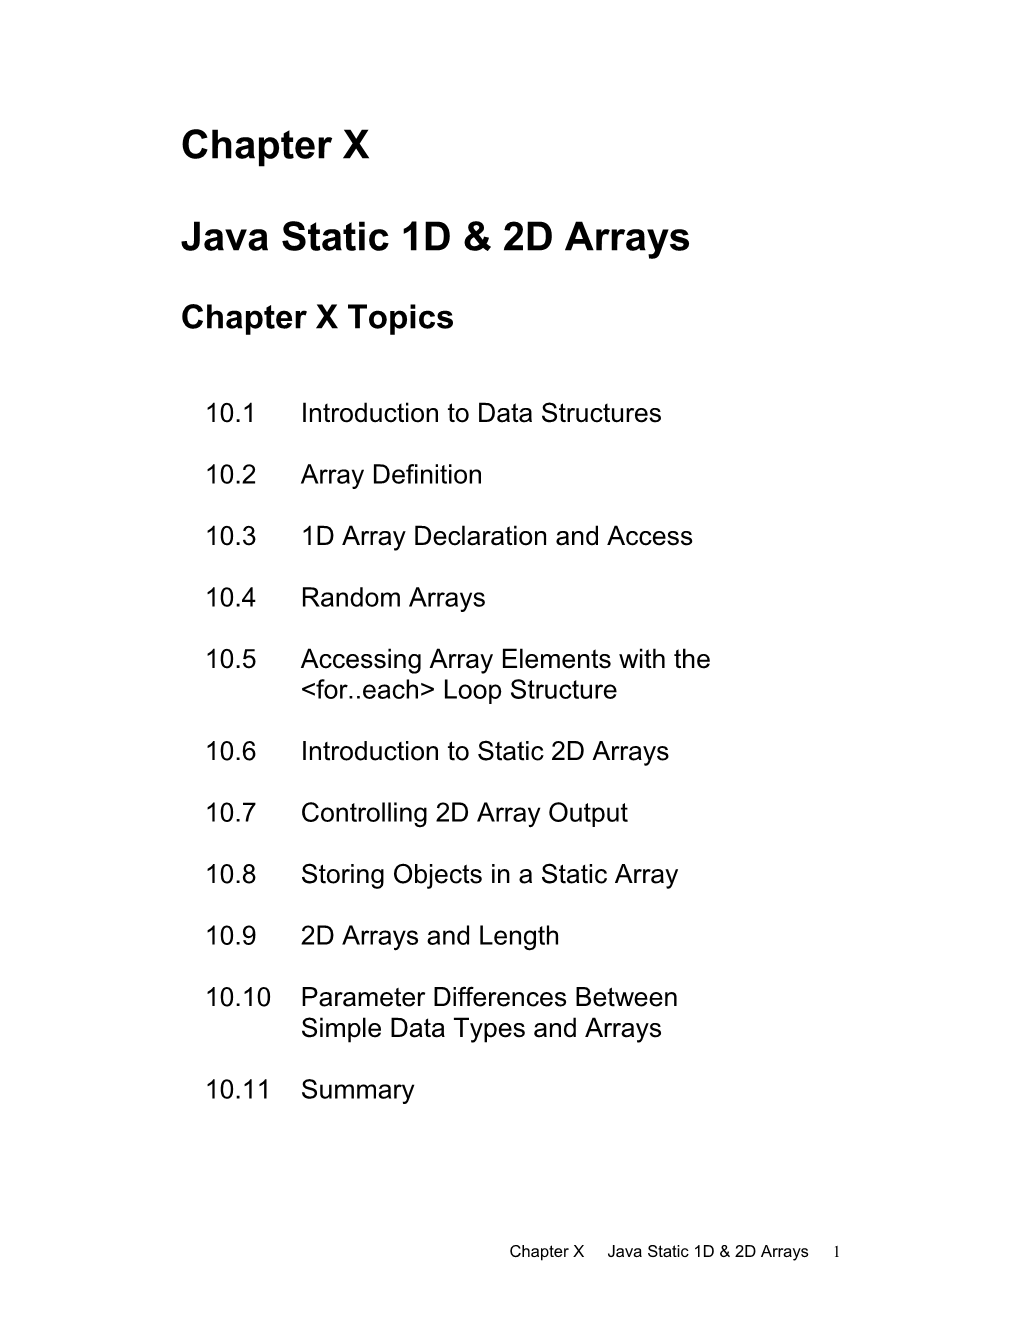 Java Static 1D & 2D Arrays